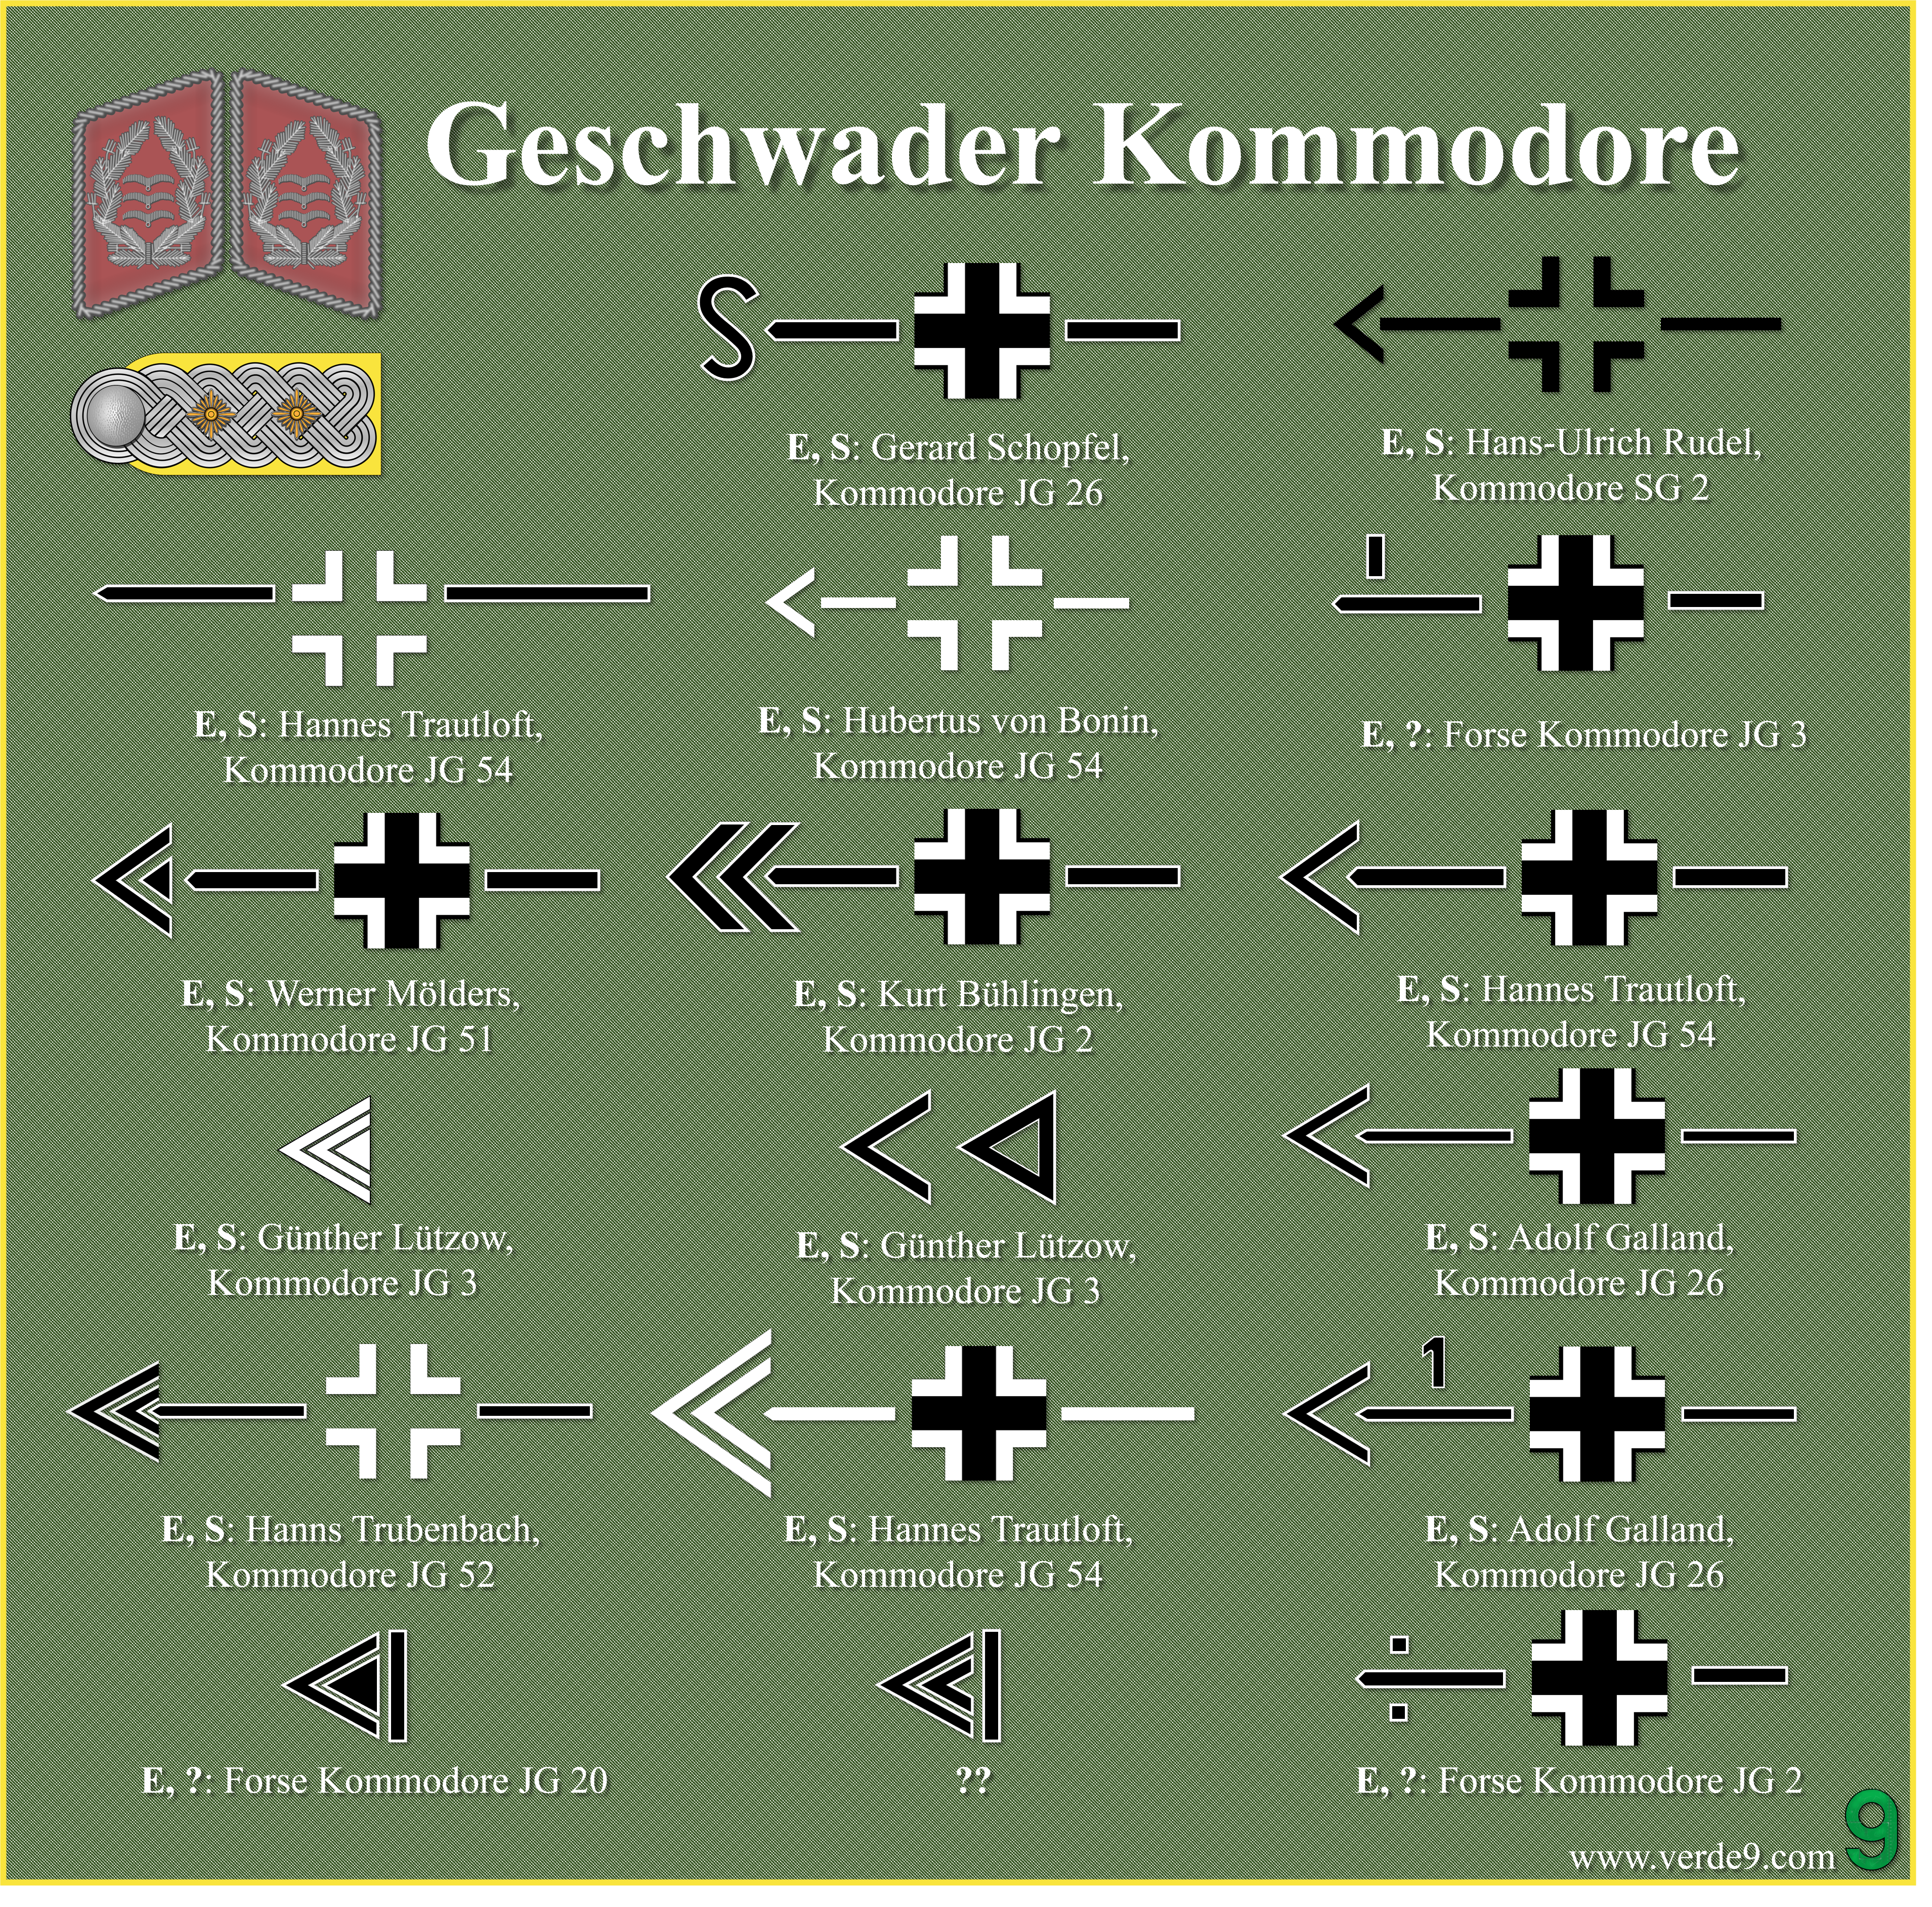 Simboli identificativi del Geschwader Kommodore.